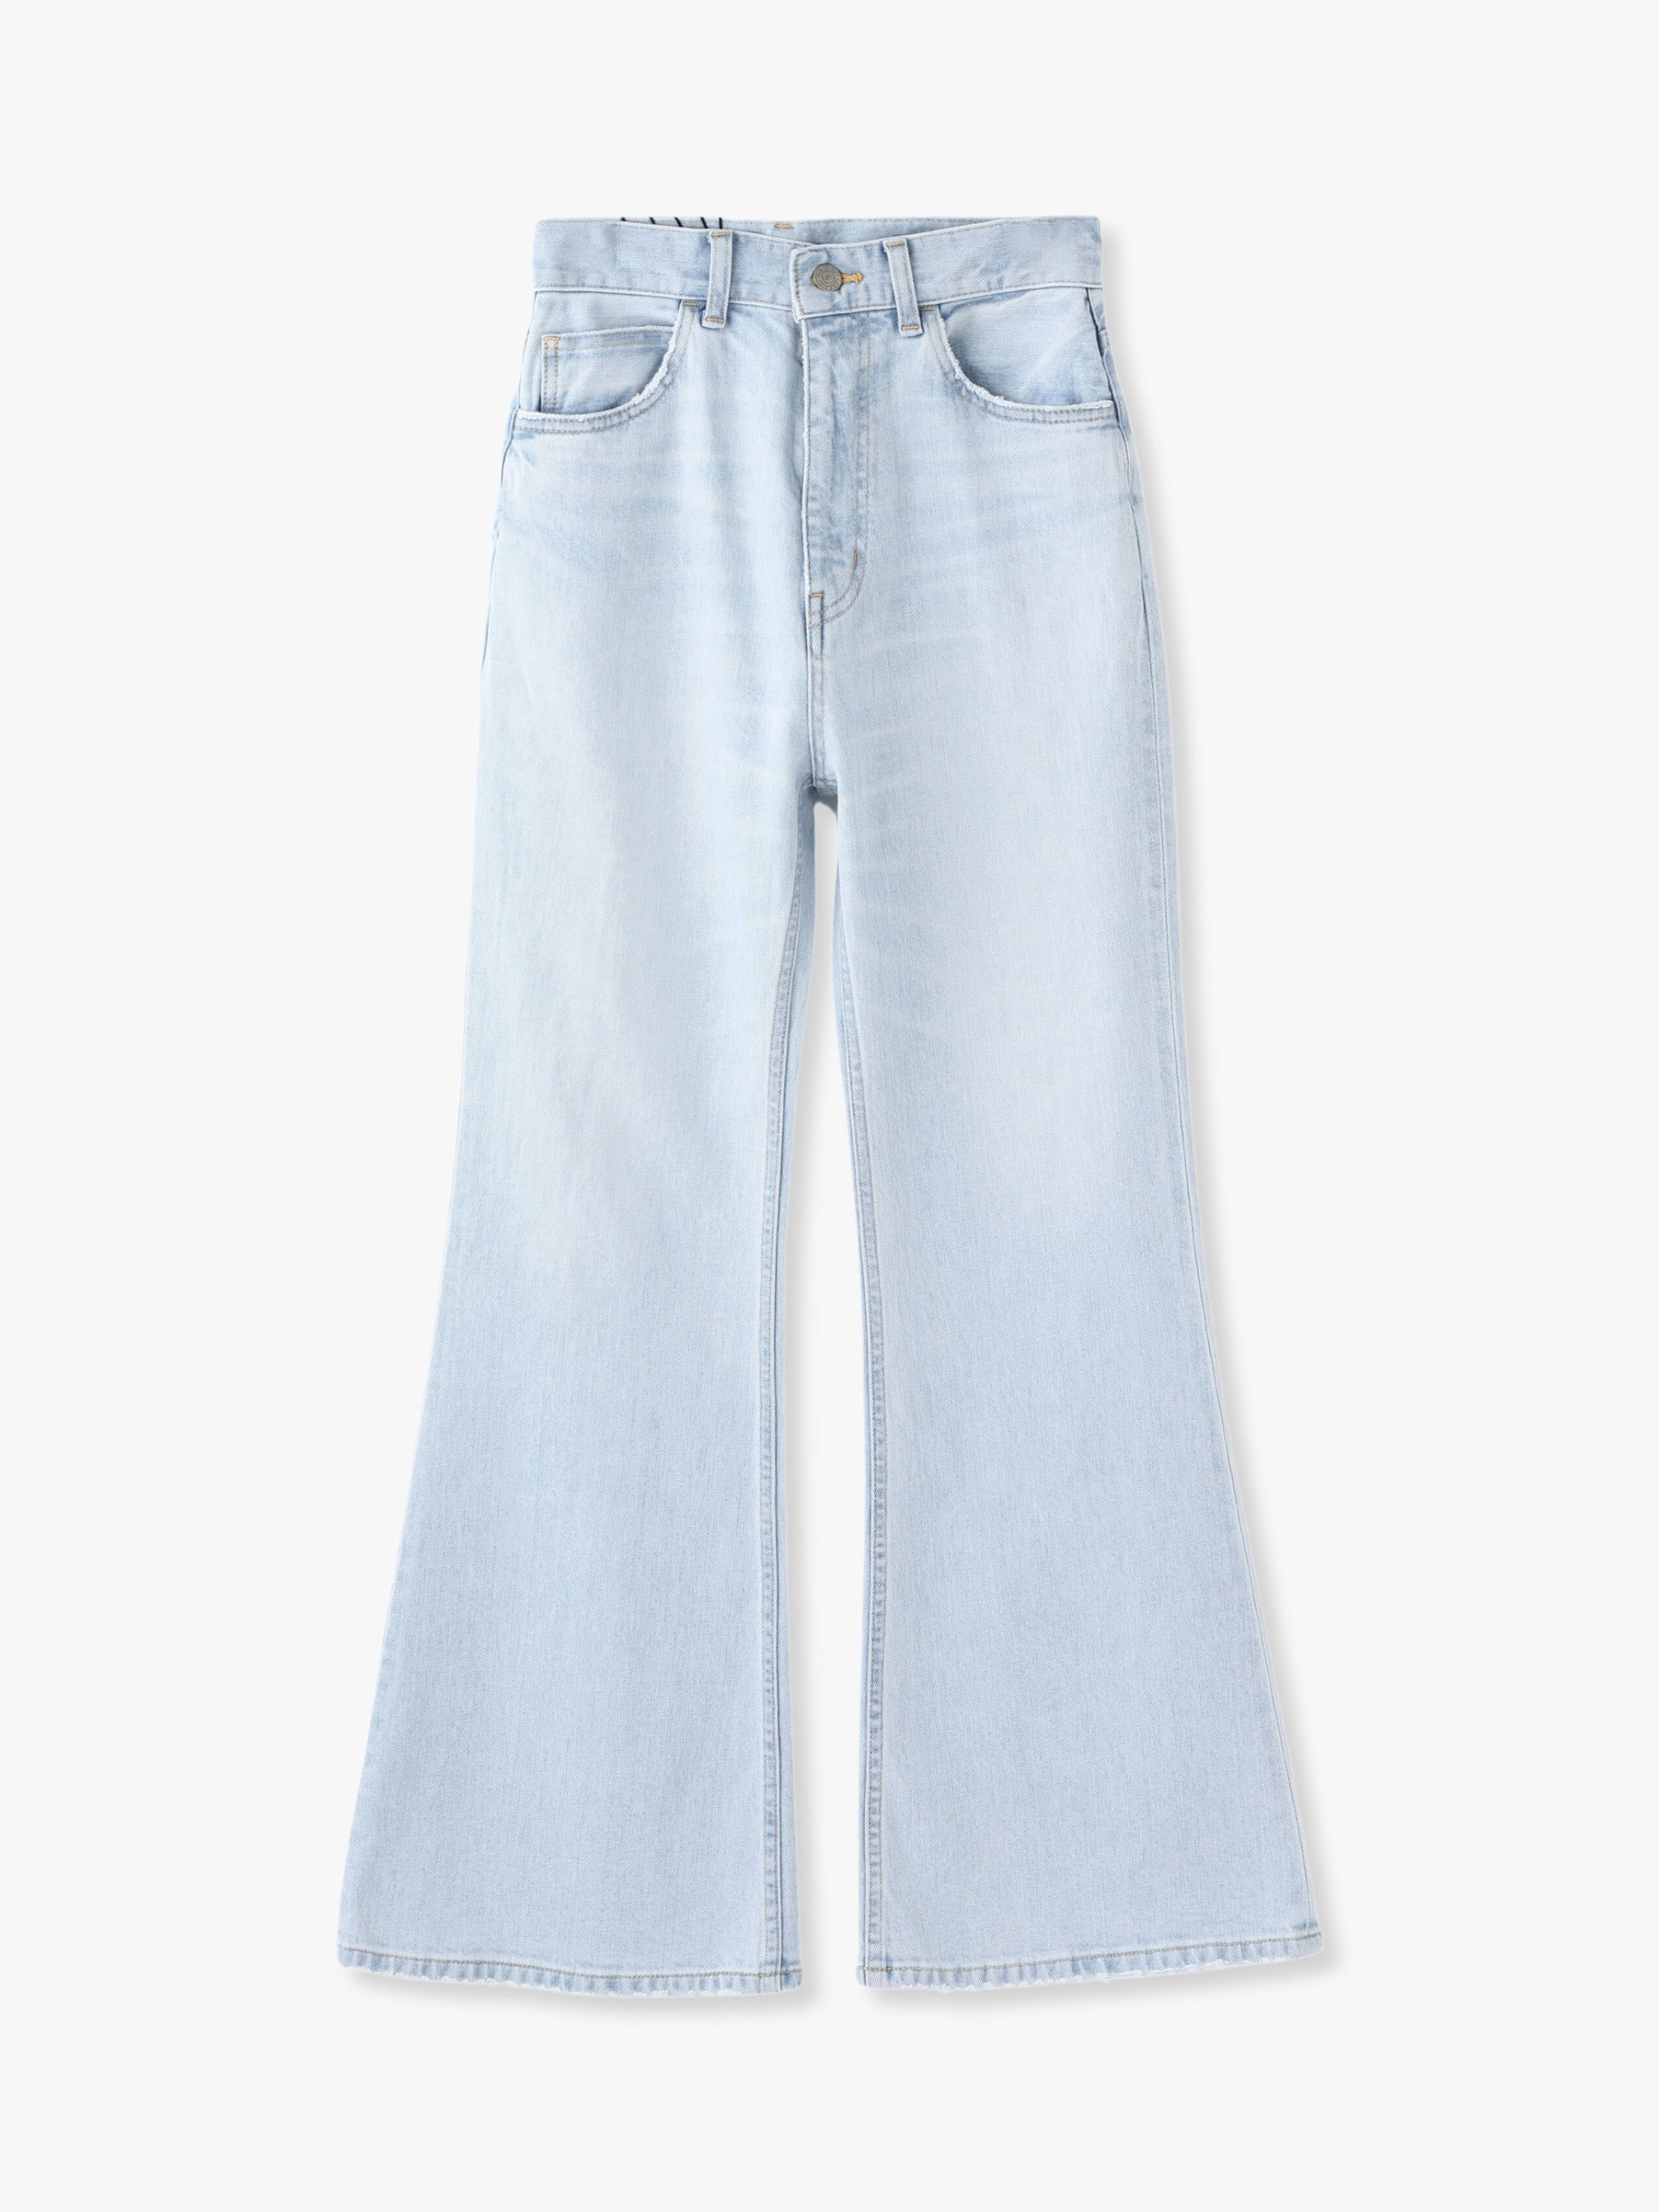 16,600円Organic Cotton Stretch Flare Denim Pants